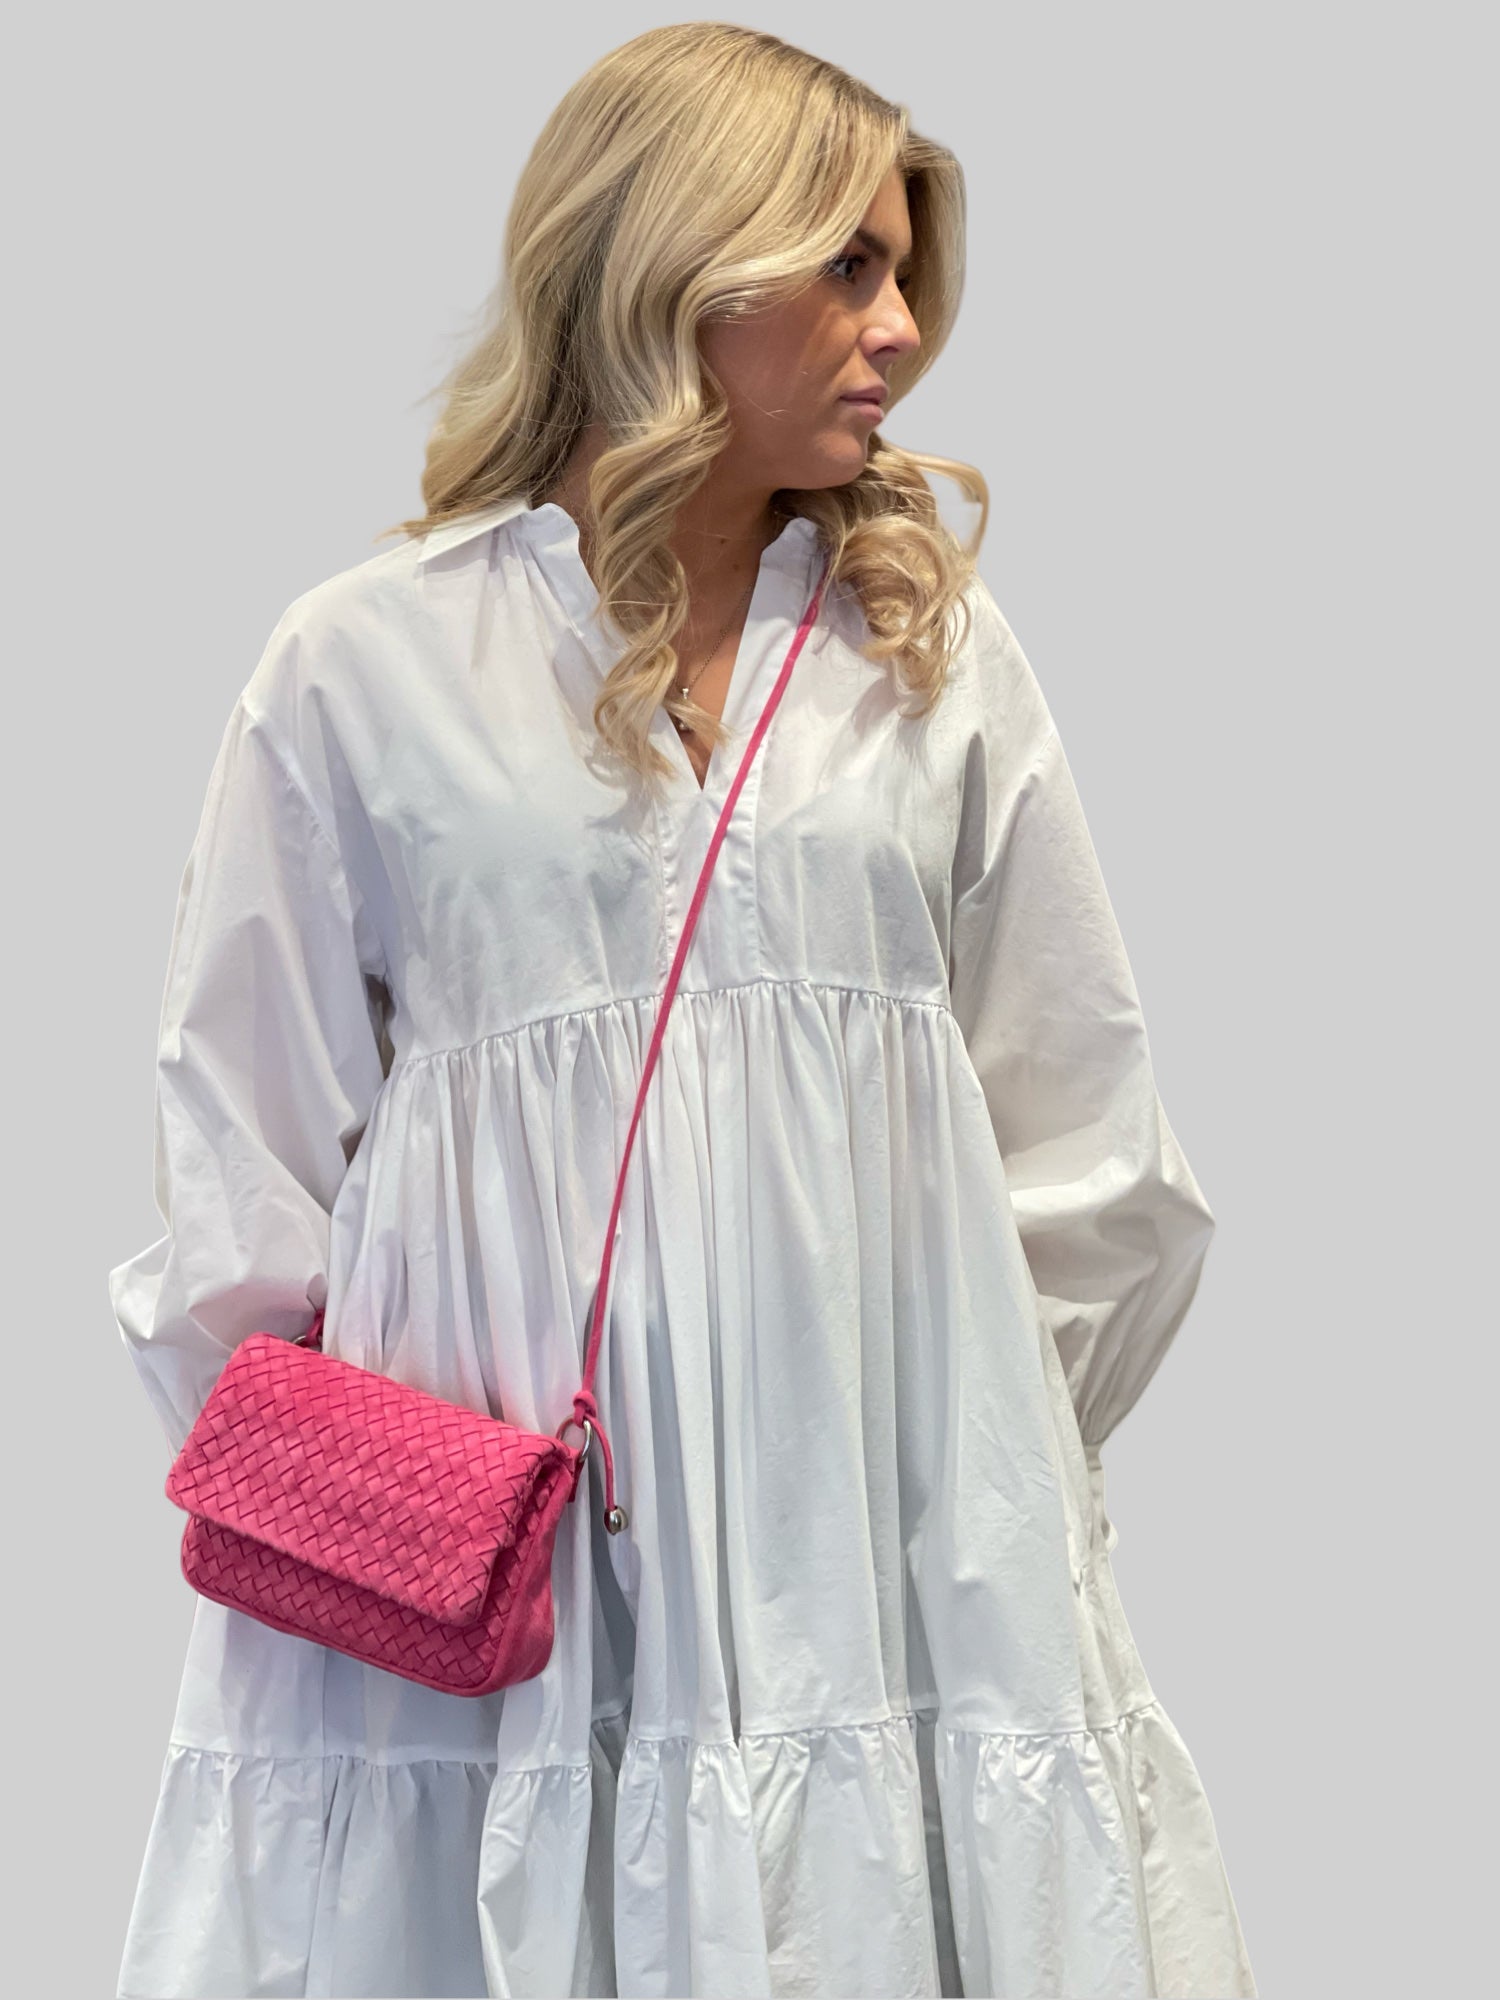 En ung kvinne i hvit kjole bærer stolt en Ribichini Undercover skinnveske i rosa. Vesken, laget av semsket flettet skinn, tilfører en trendy og sofistikert stil til antrekket hennes.